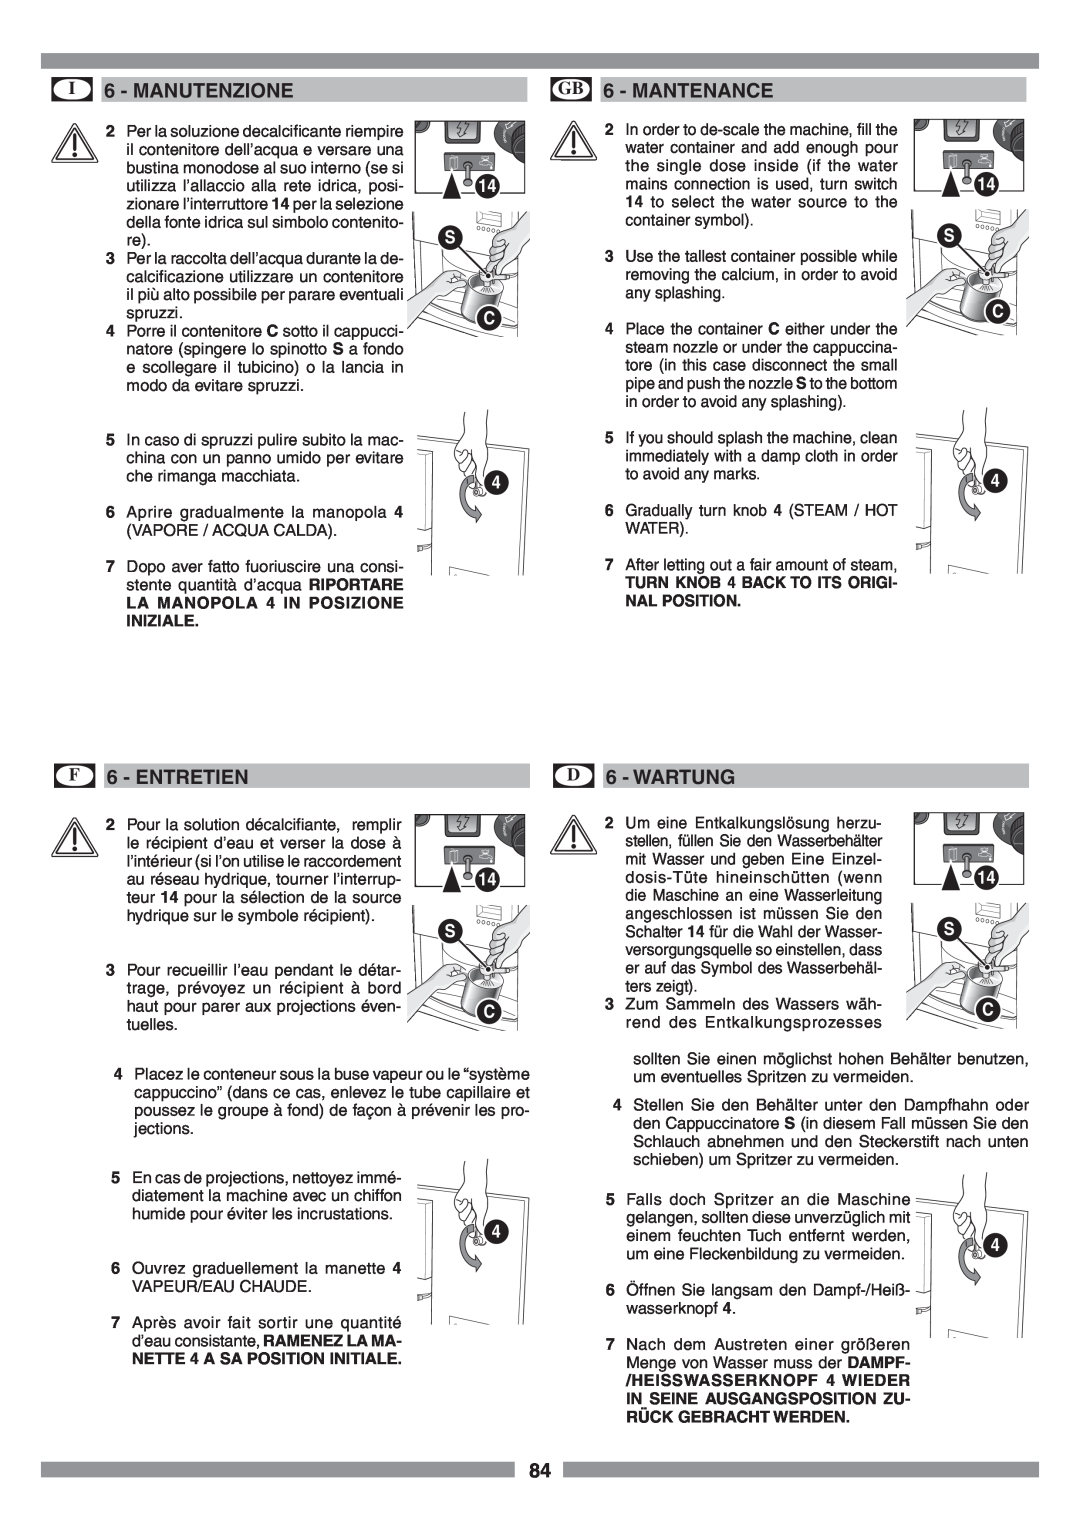 Smeg SCM1 manual Mantenance, I 6 - MANUTENZIONE, F 6 - ENTRETIEN, D 6 - WARTUNG, LA MANOPOLA 4 IN POSIZIONE INIZIALE 